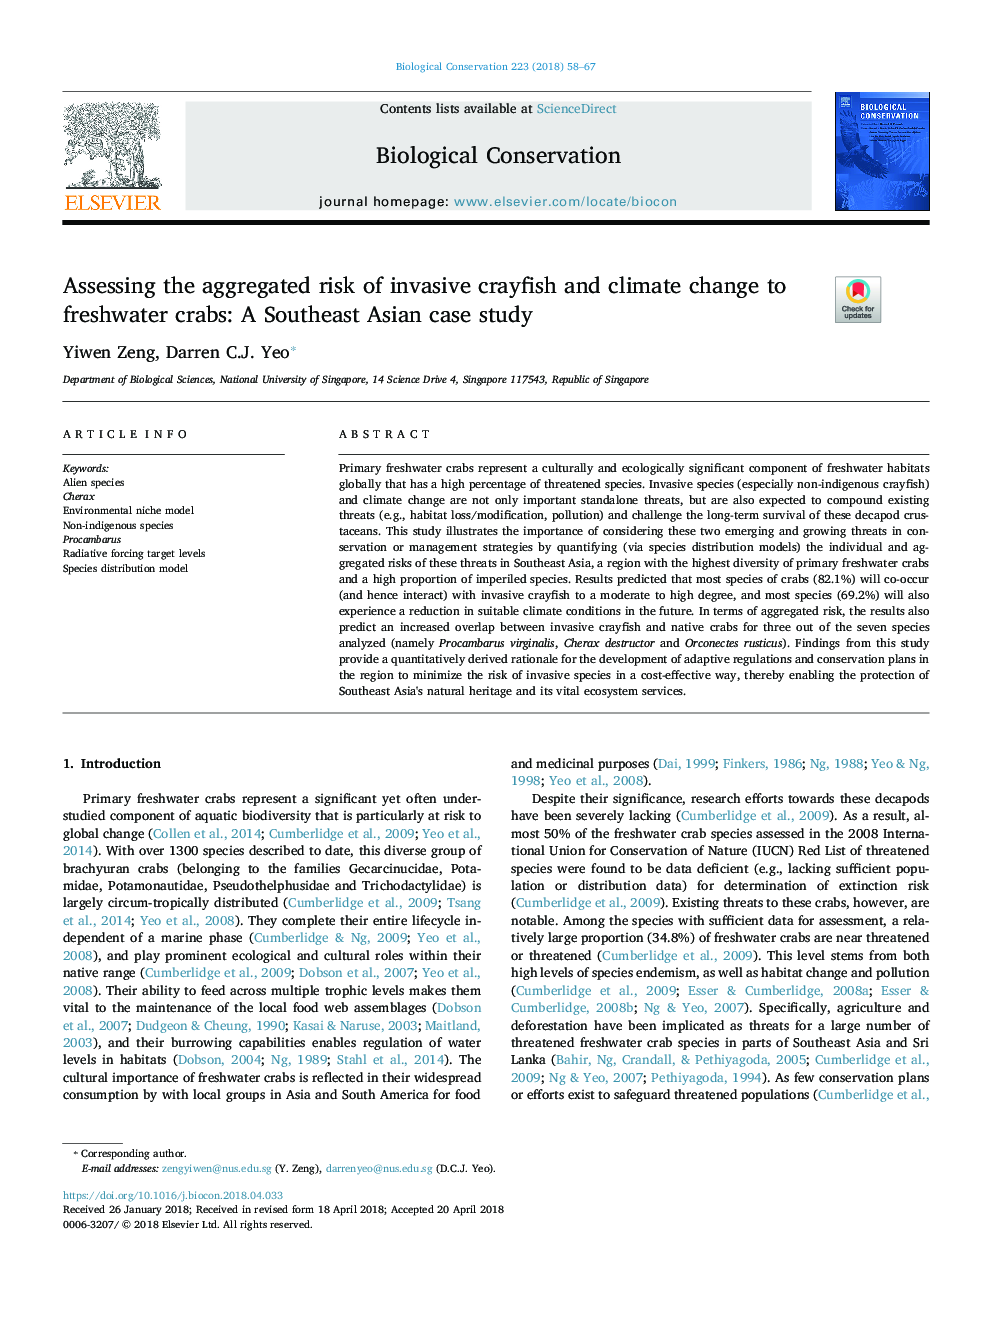 ارزیابی ریسک جمع و جور خرچنگ تهاجمی و تغییرات آب و هوایی به خرچنگ های آب شیرین: مطالعه موردی جنوب شرقی آسیا 